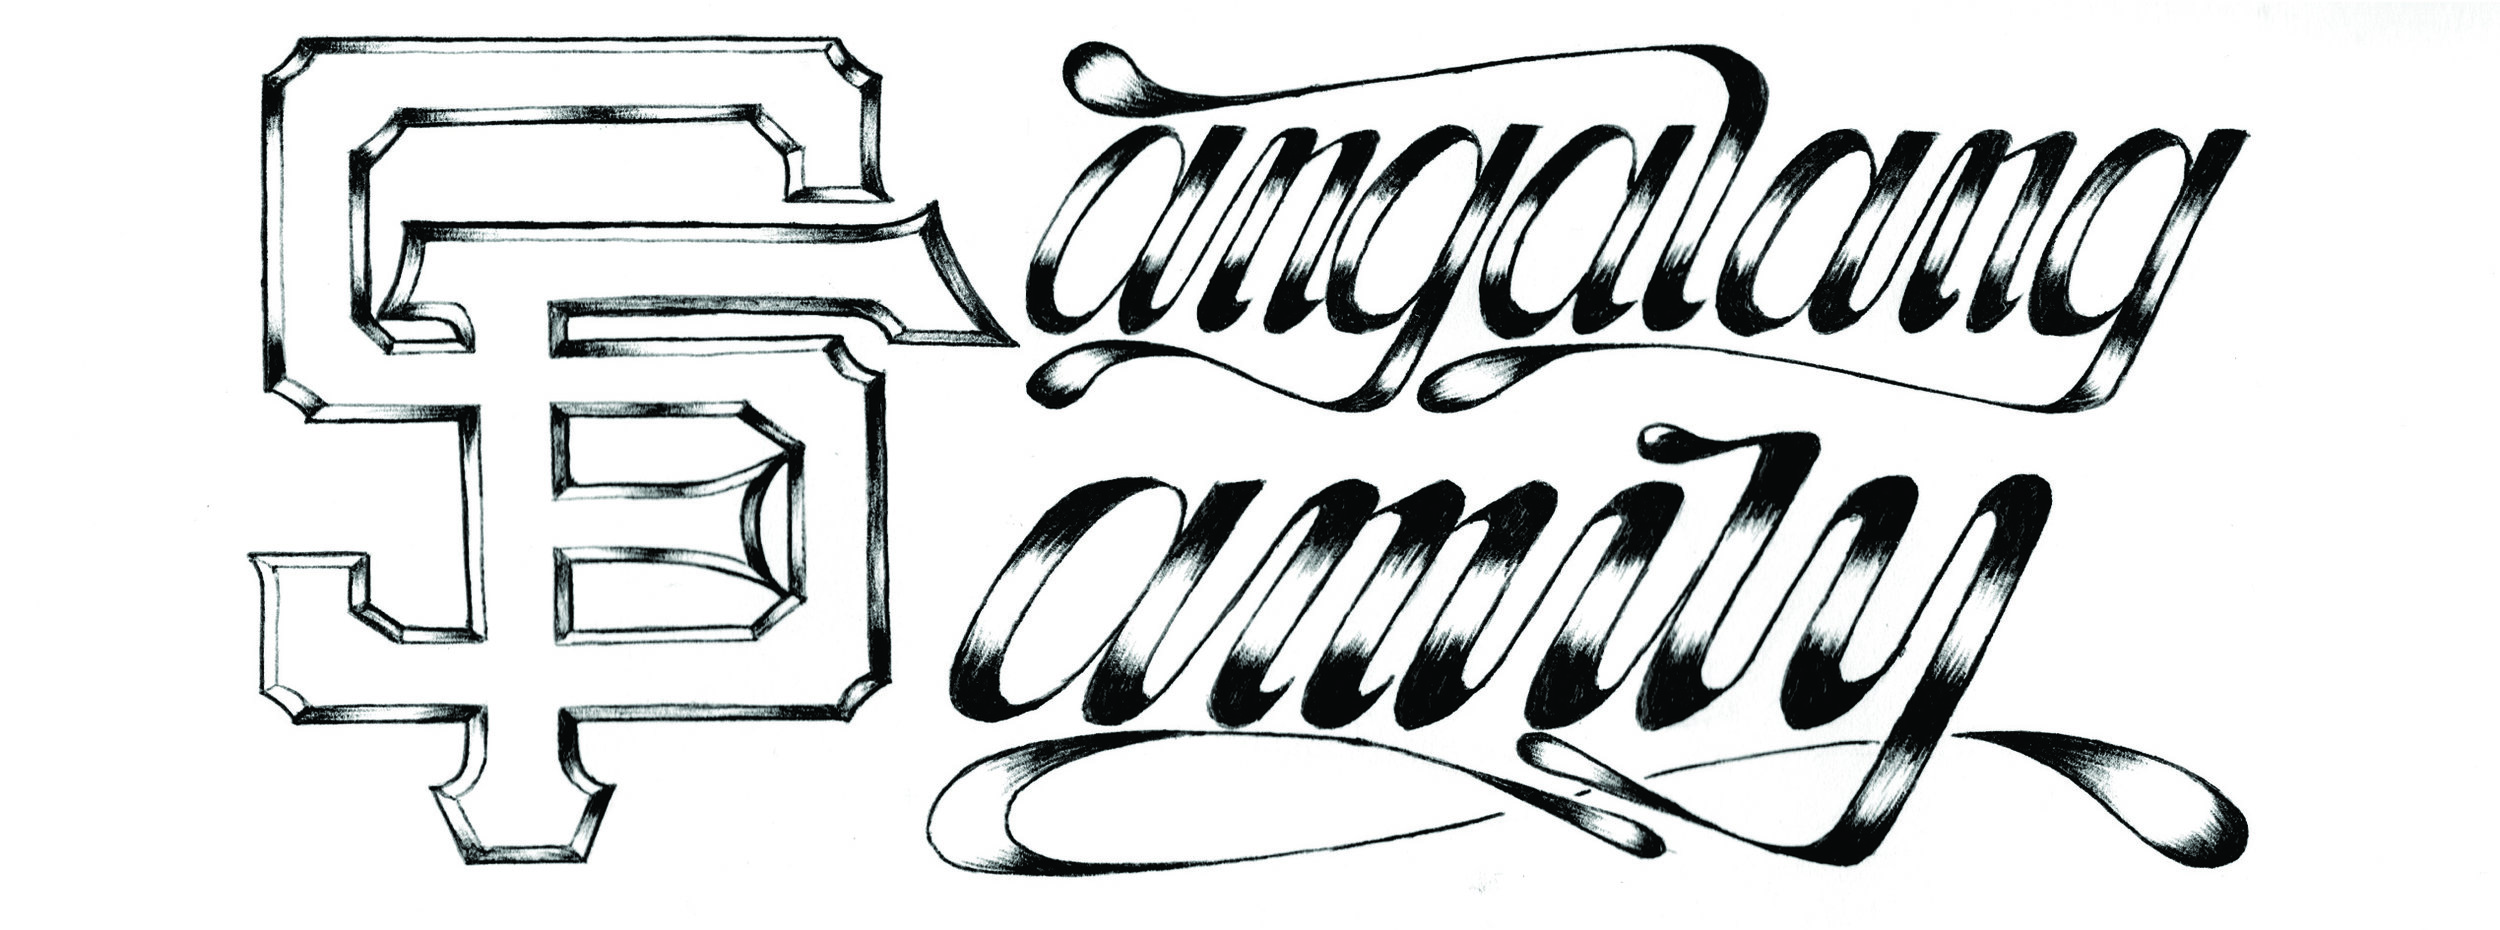 S.F.amily Logo: Variant 1